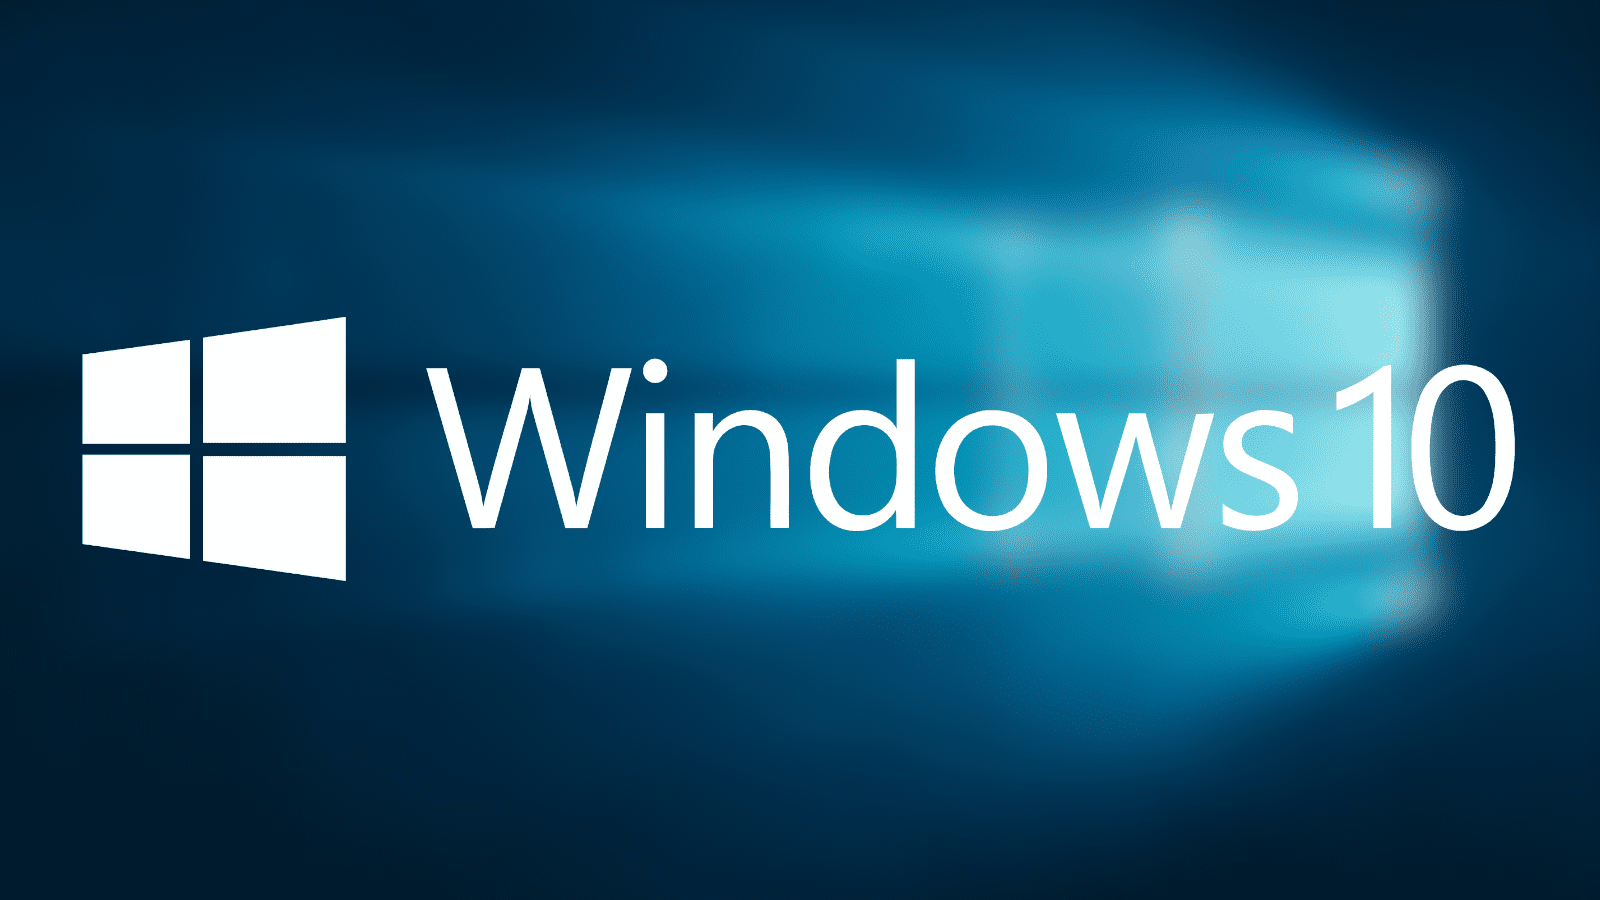 Microsoft finalizará pronto el soporte para Windows 10 Enterprise